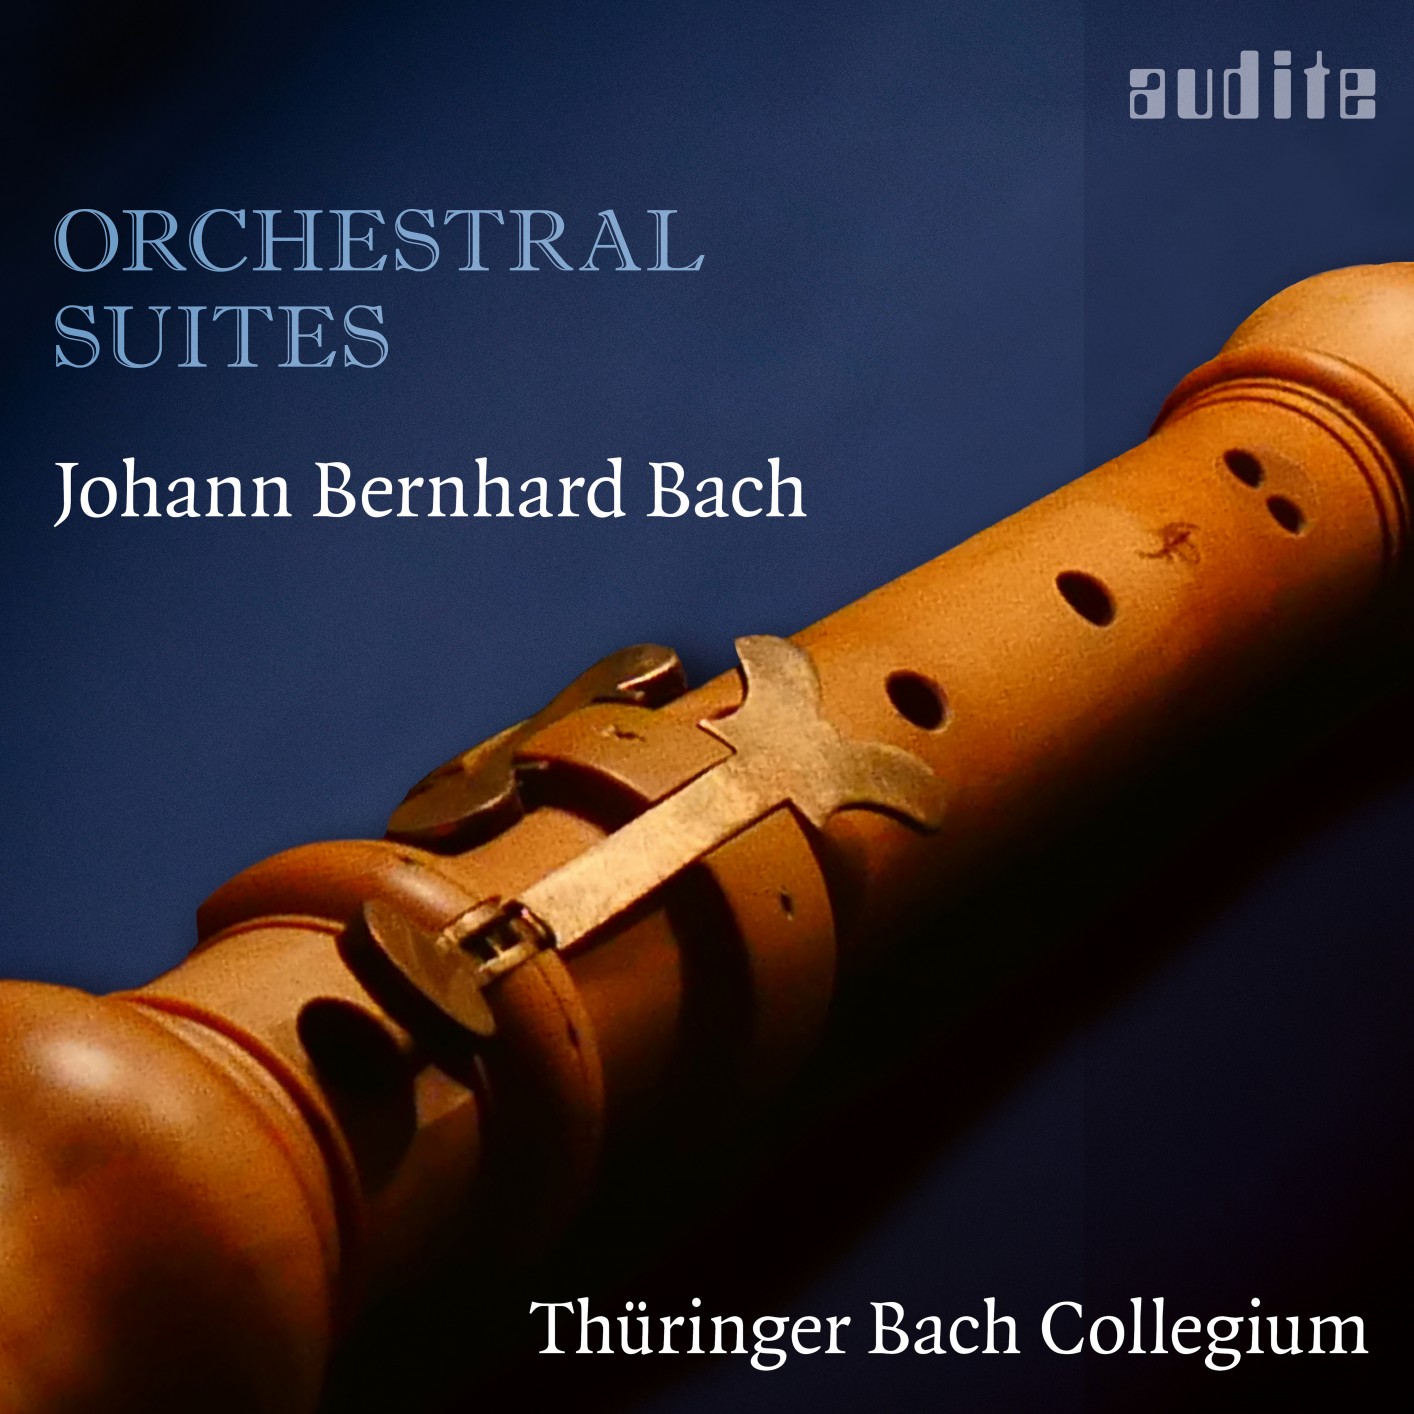 Thuringer Bach Collegium - Johann Bernhard Bach: Orchestral Suites (2019) [FLAC 24bit/96kHz]